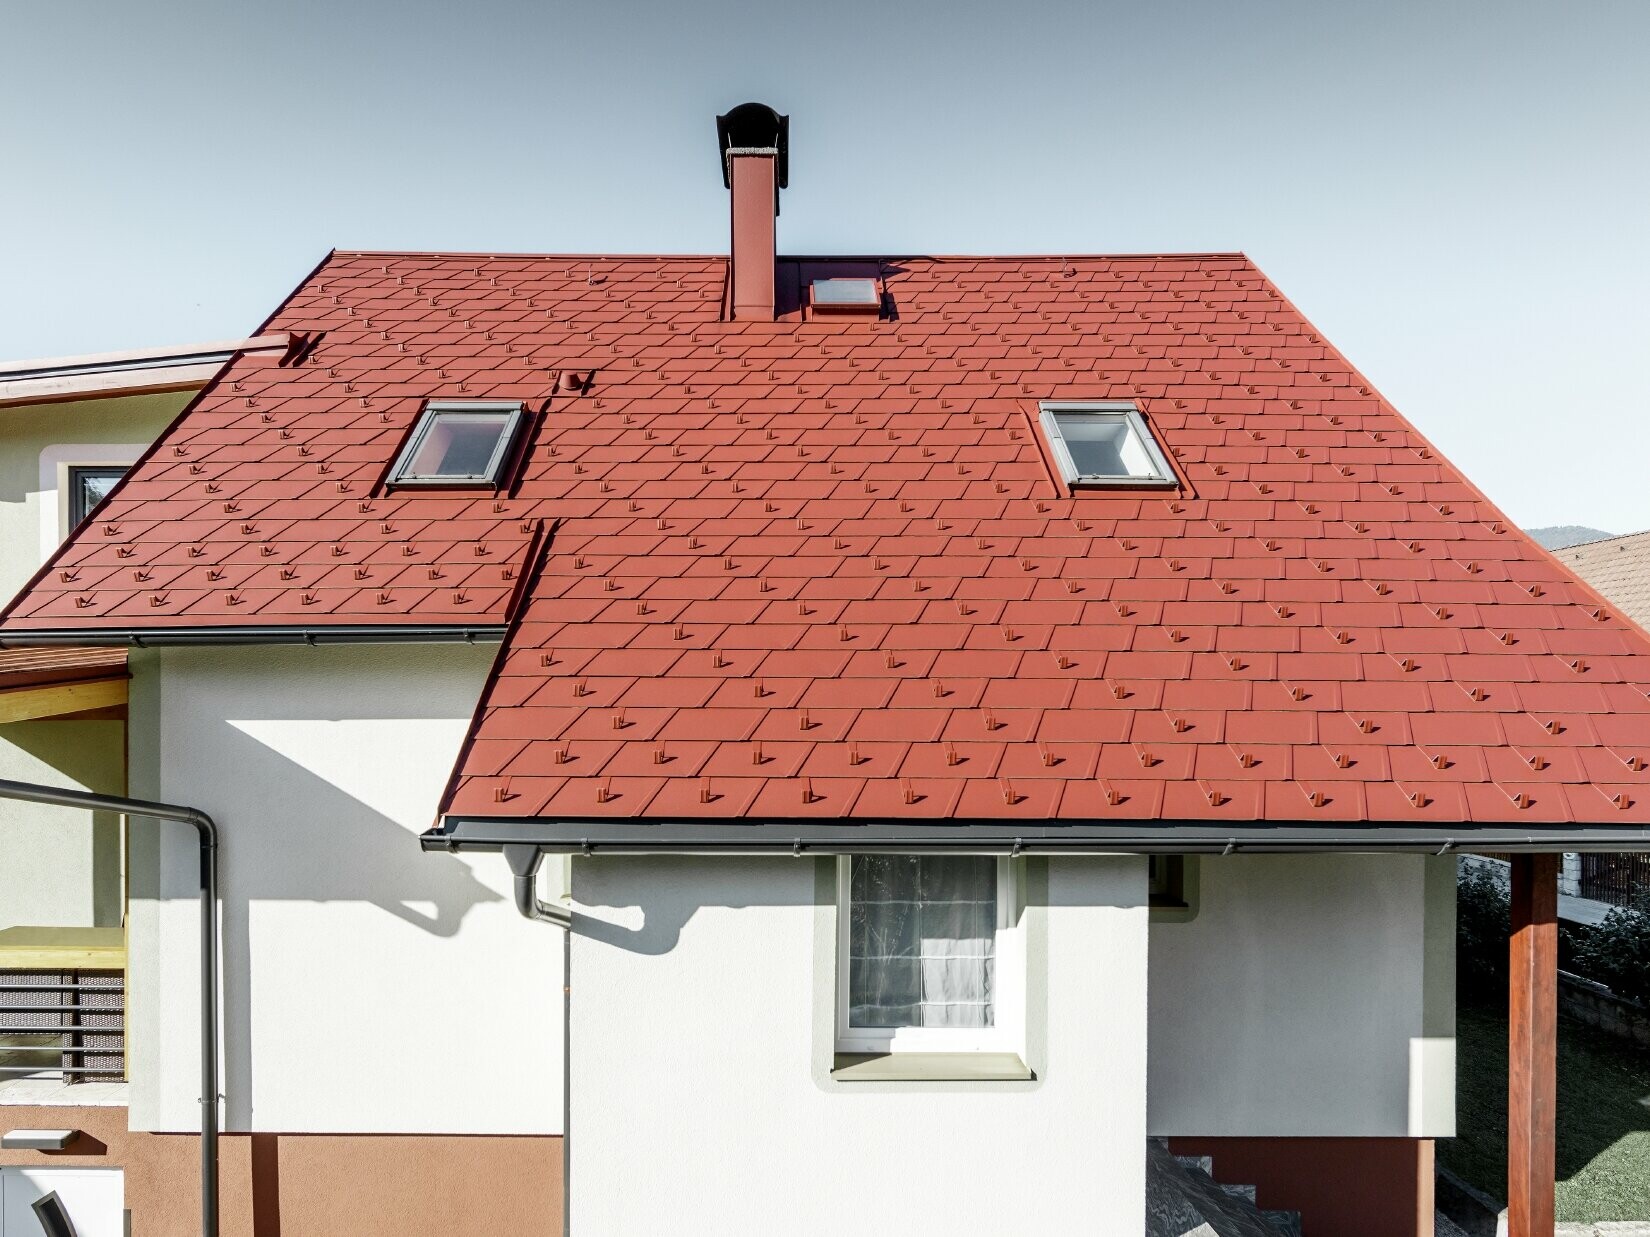 Maison individuelle rénovée avec toiture couverte de bardeaux de toiture PREFA. Le choix s’est porté sur le DS.19 de couleur rouge oxyde.